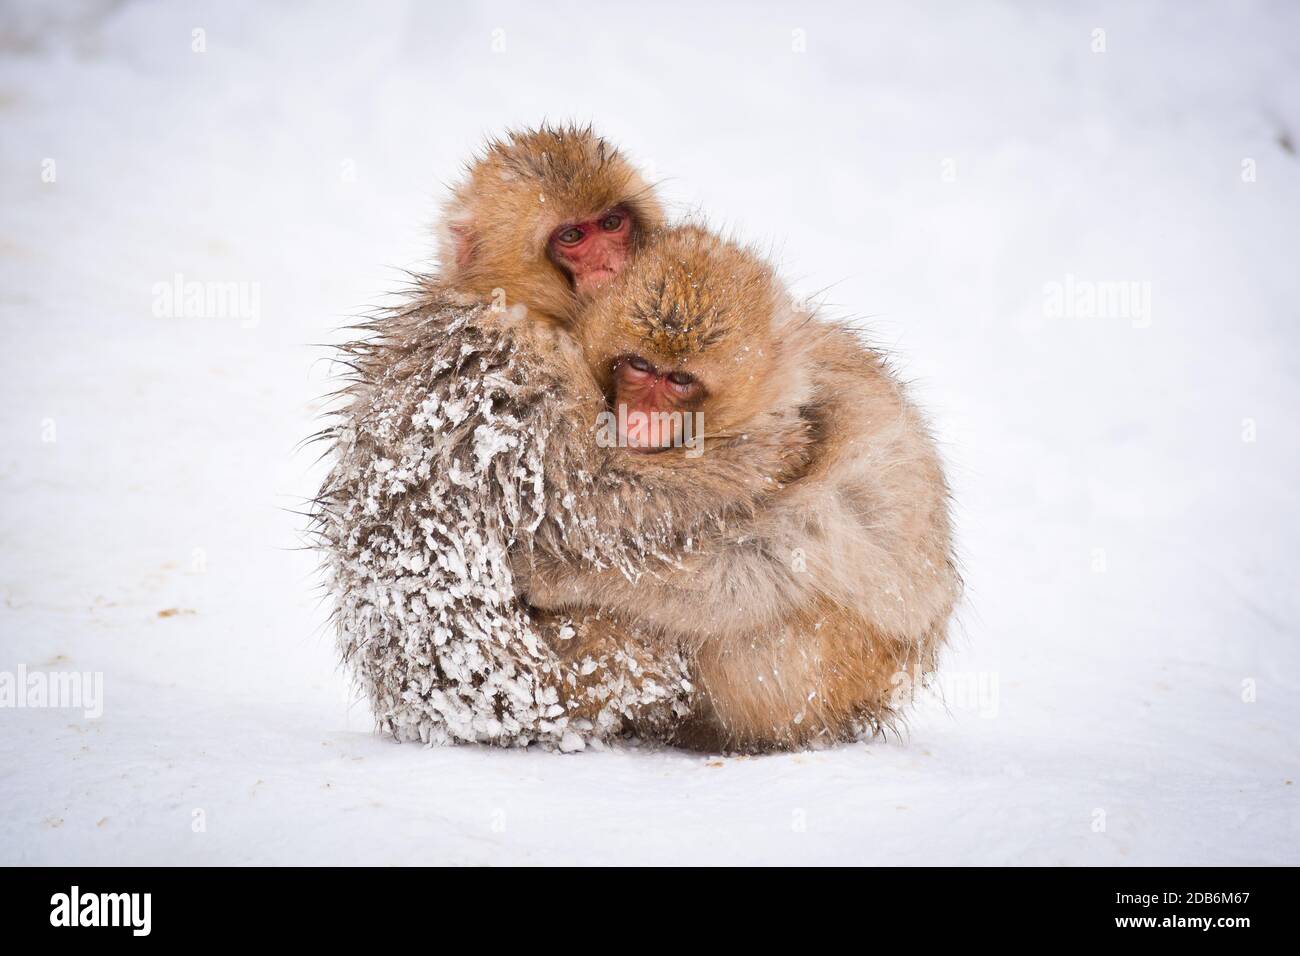 dos monos de la nieve del bebé marrón lindo abrazándose y resguardo el uno al otro de la nieve fría con hielo en su piel en invierno. Animales salvajes mostrando amor Foto de stock